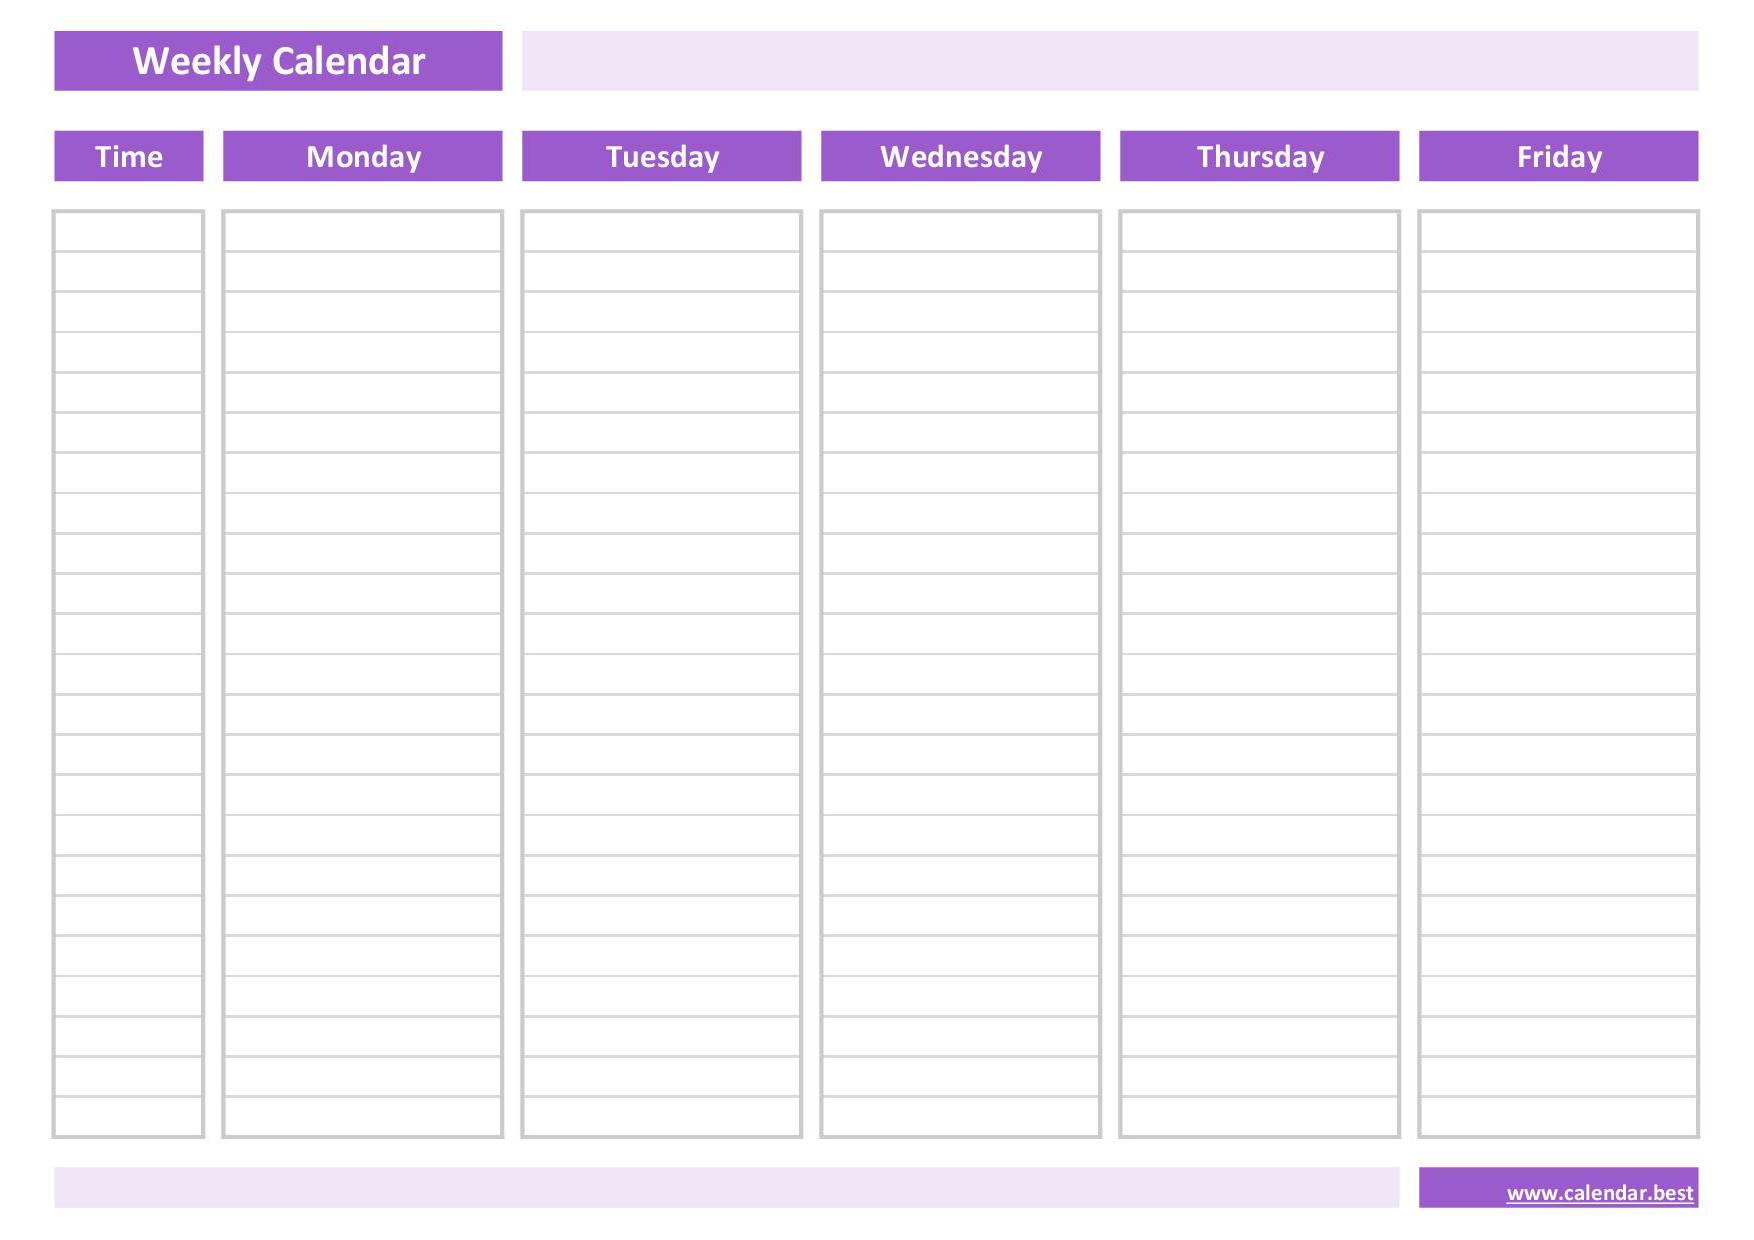 Work Schedule Calendar Template from www.calendar.best